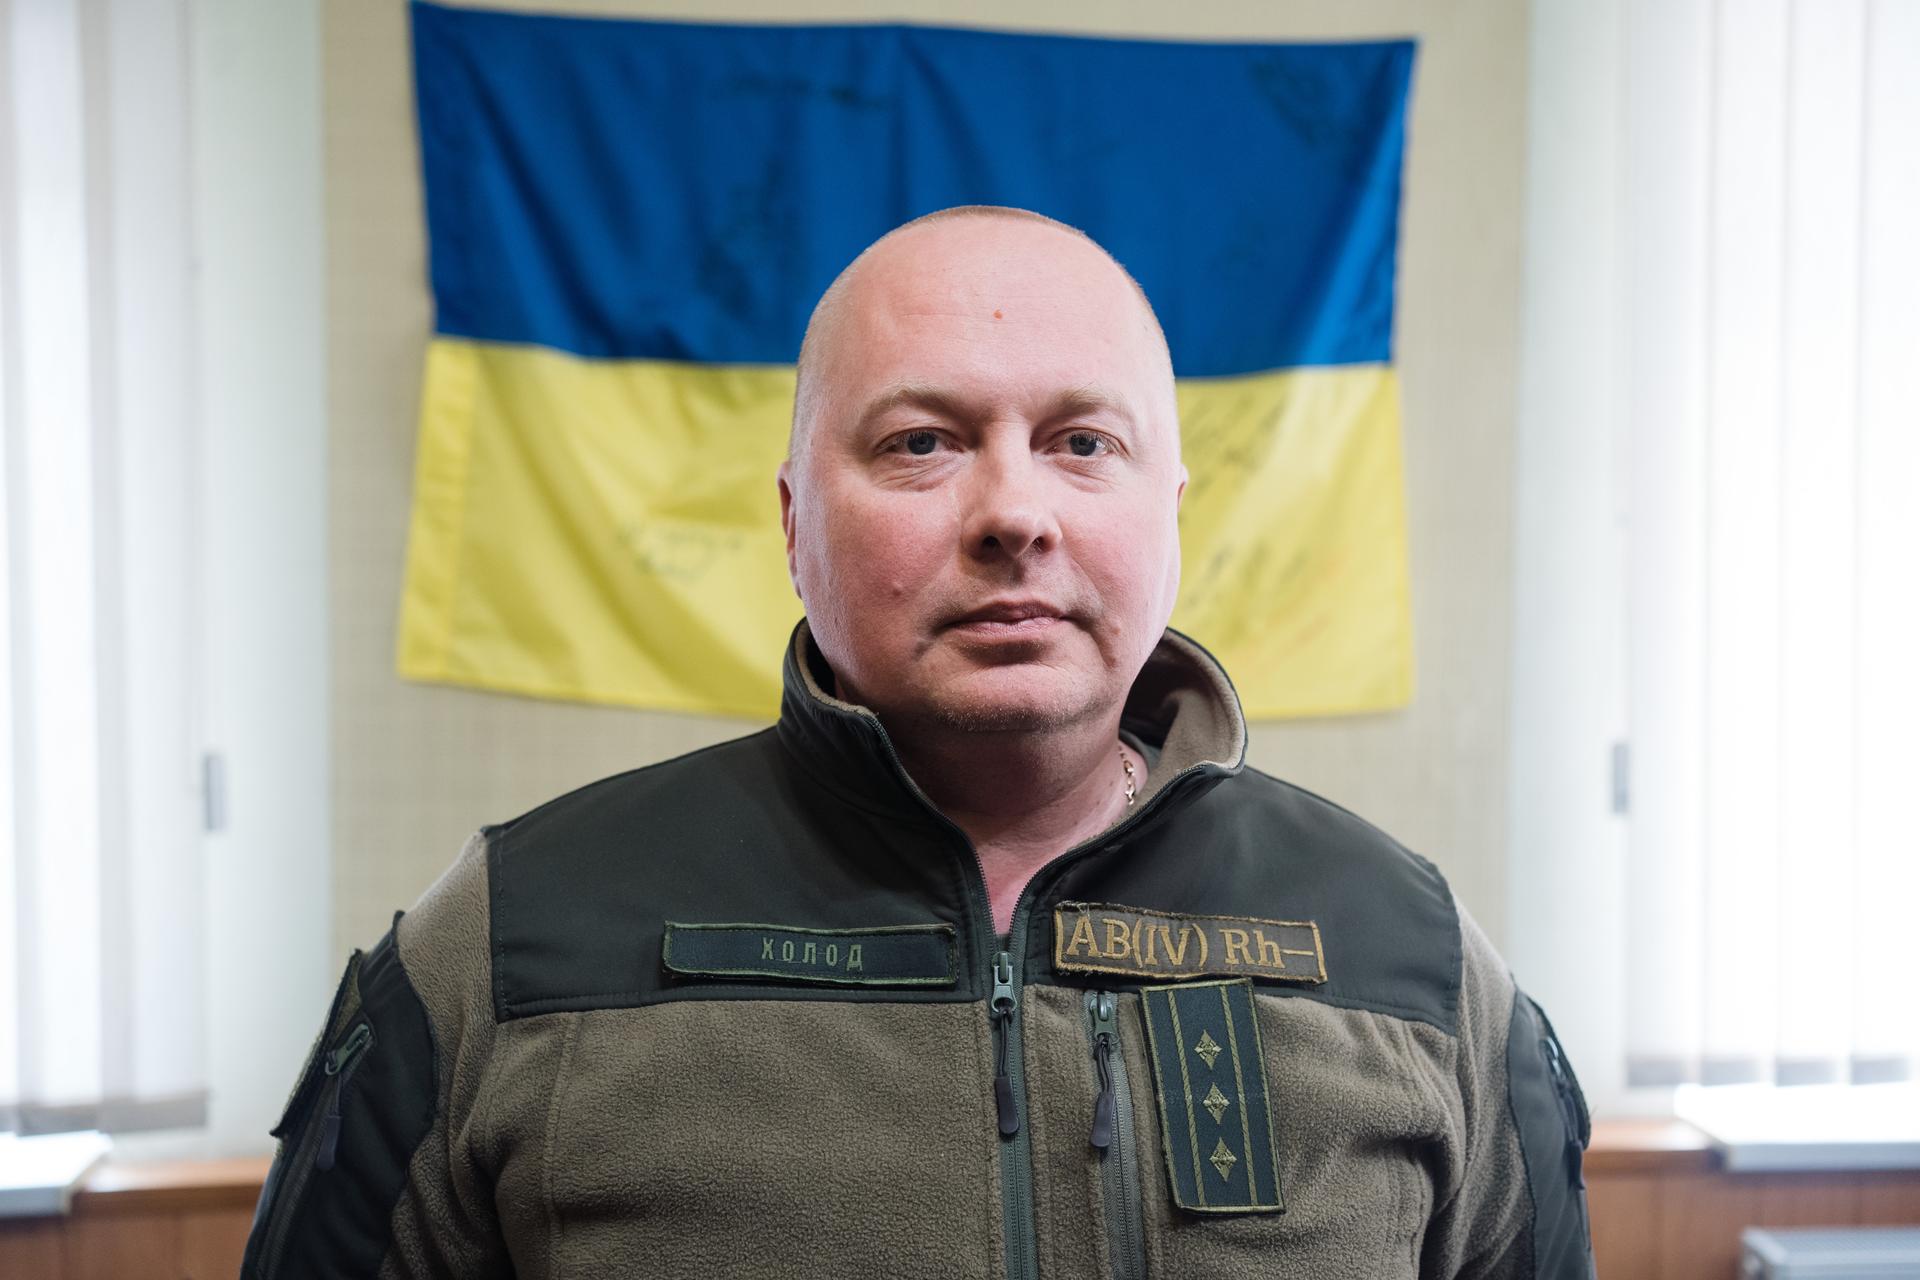 Dmitry Kholod is a deputy warden at Kharkiv Pre-trial Detention Center Number 27.